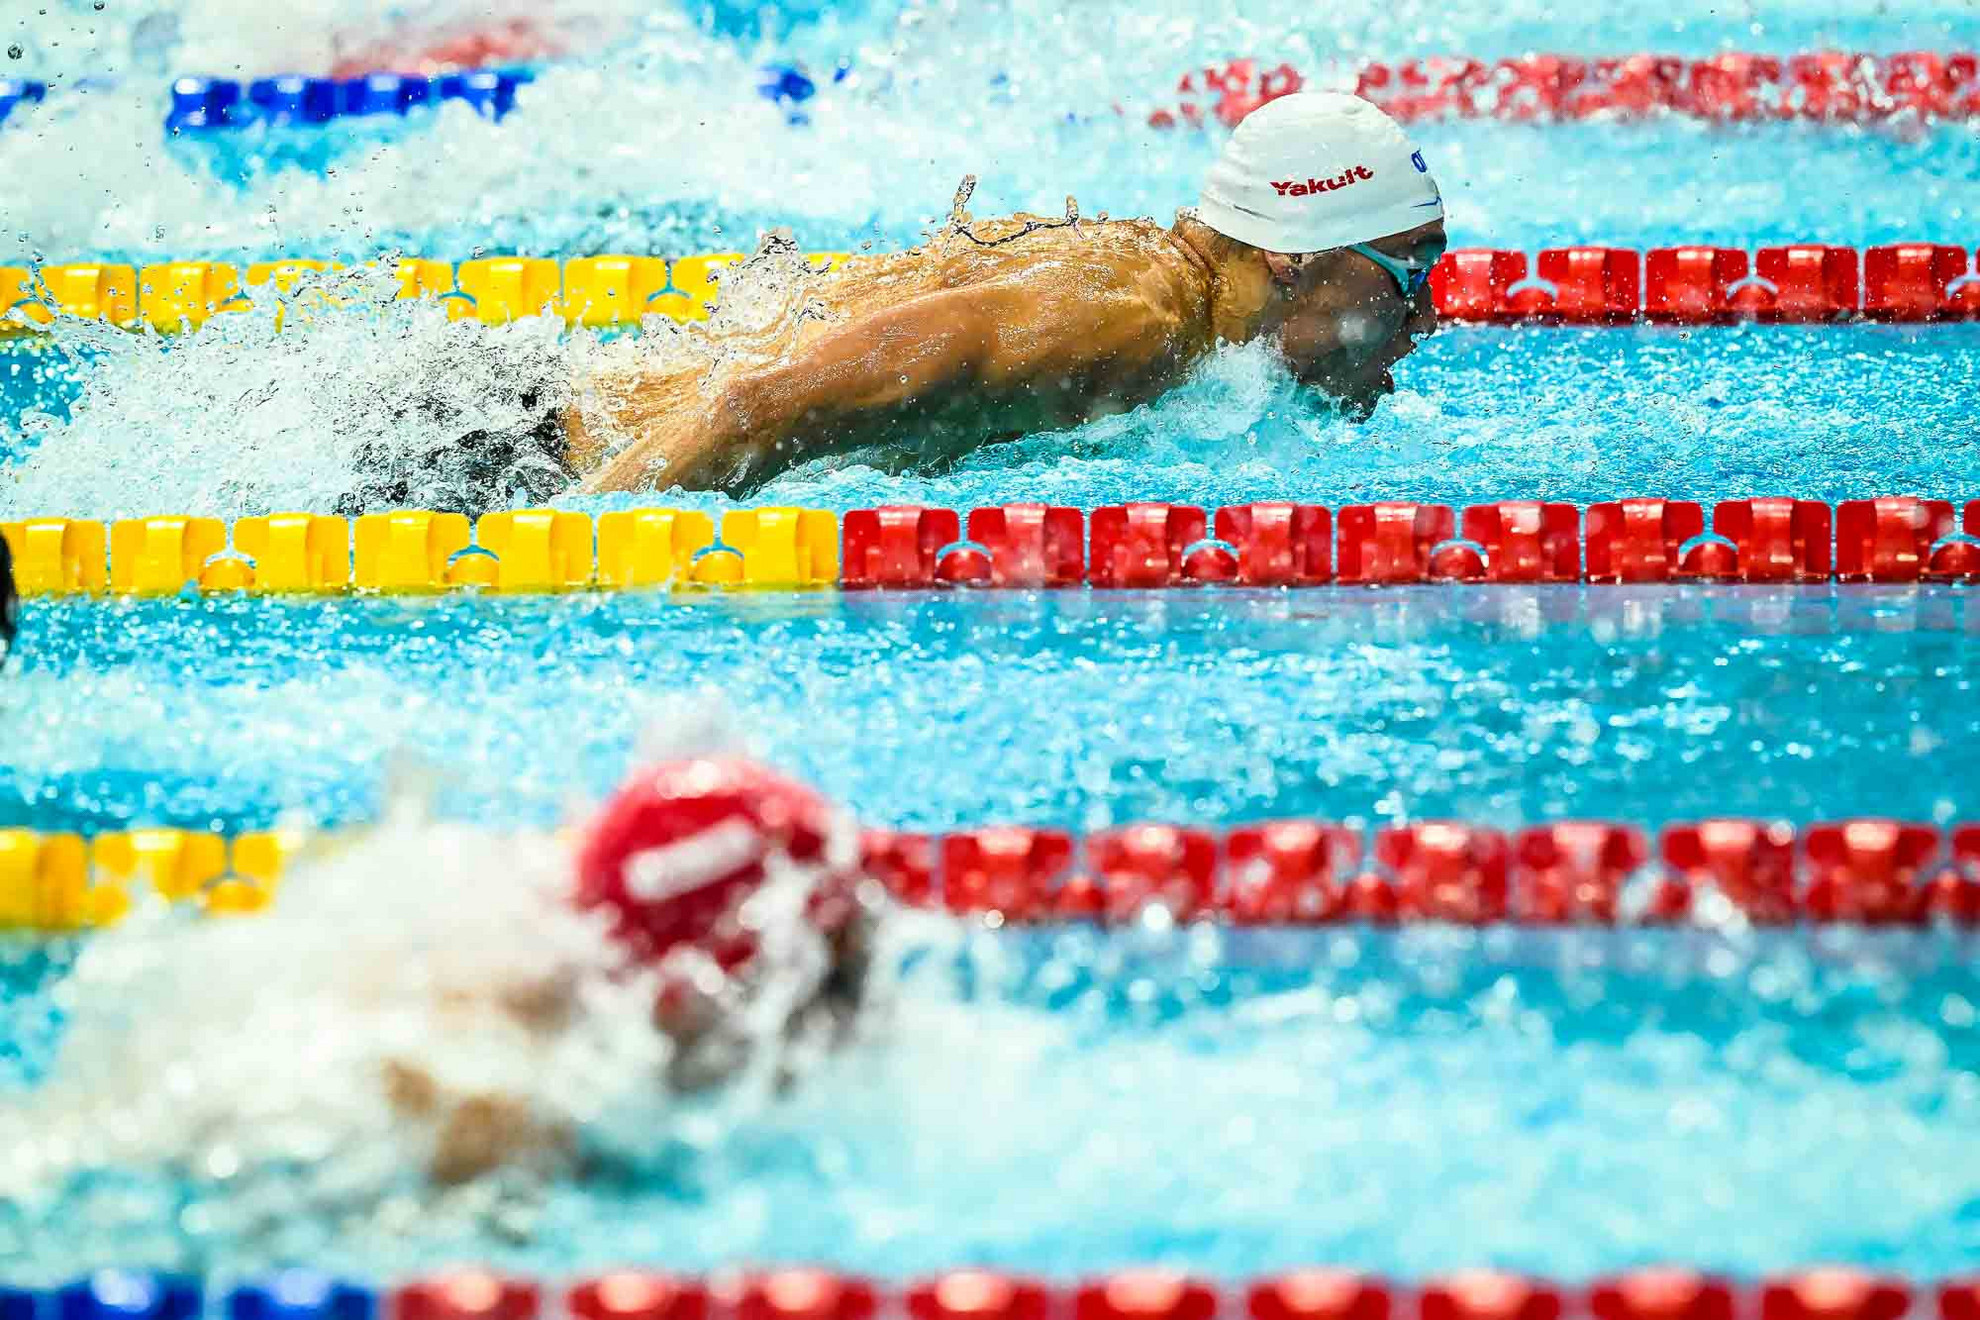 Milák önmaga harmadik, a magyar úszósport történetének 34. világbajnoki aranyát szerezte